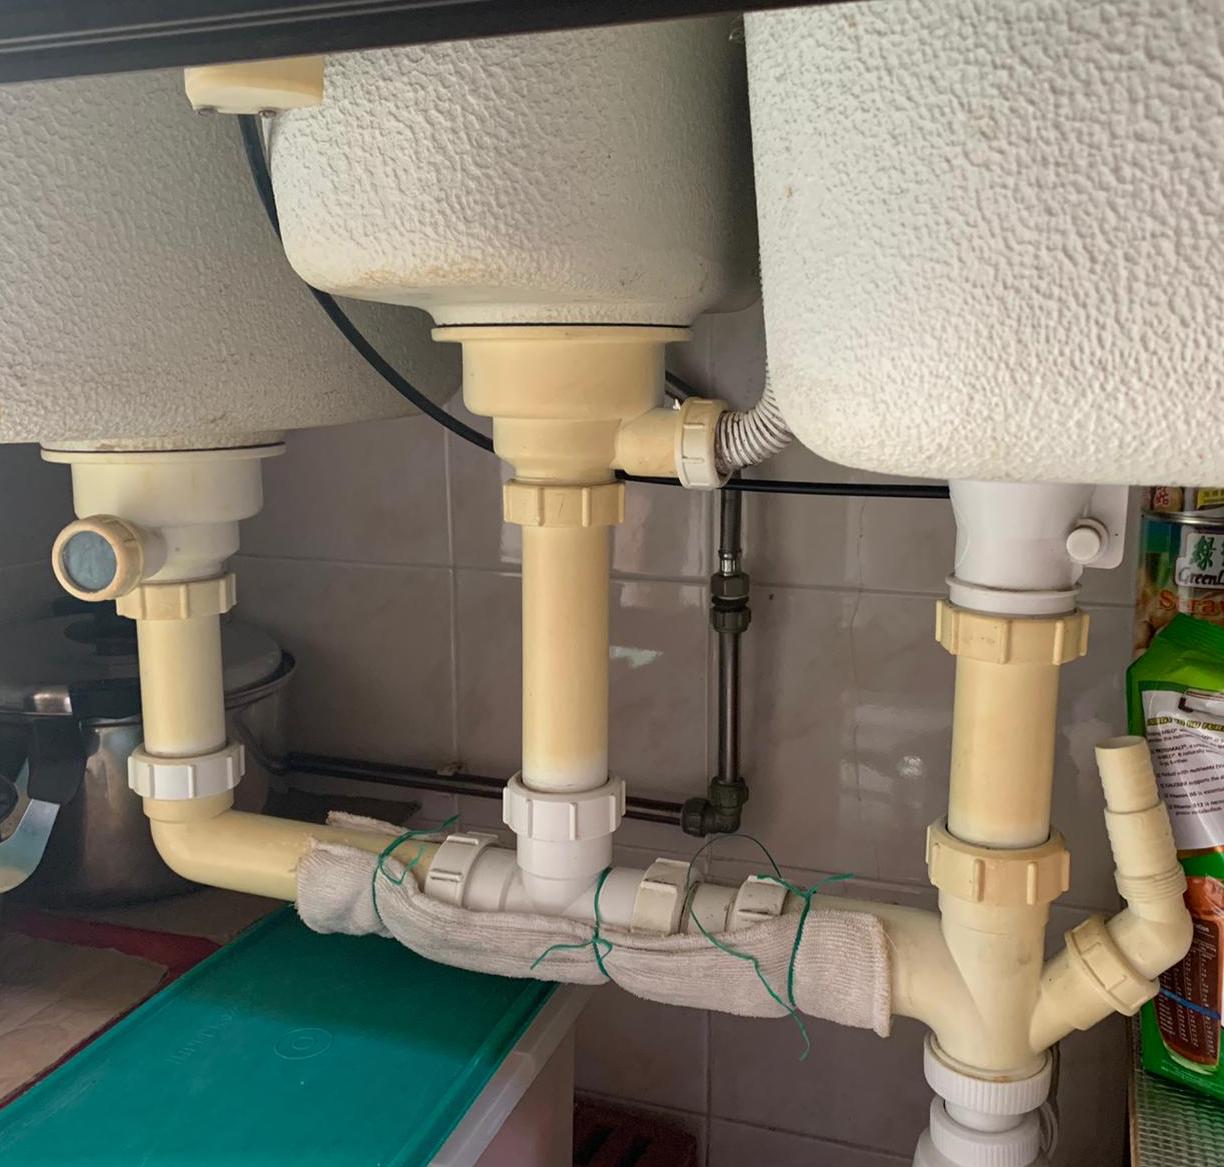 repair-leaking-pipe-under-kitchen-sink-service